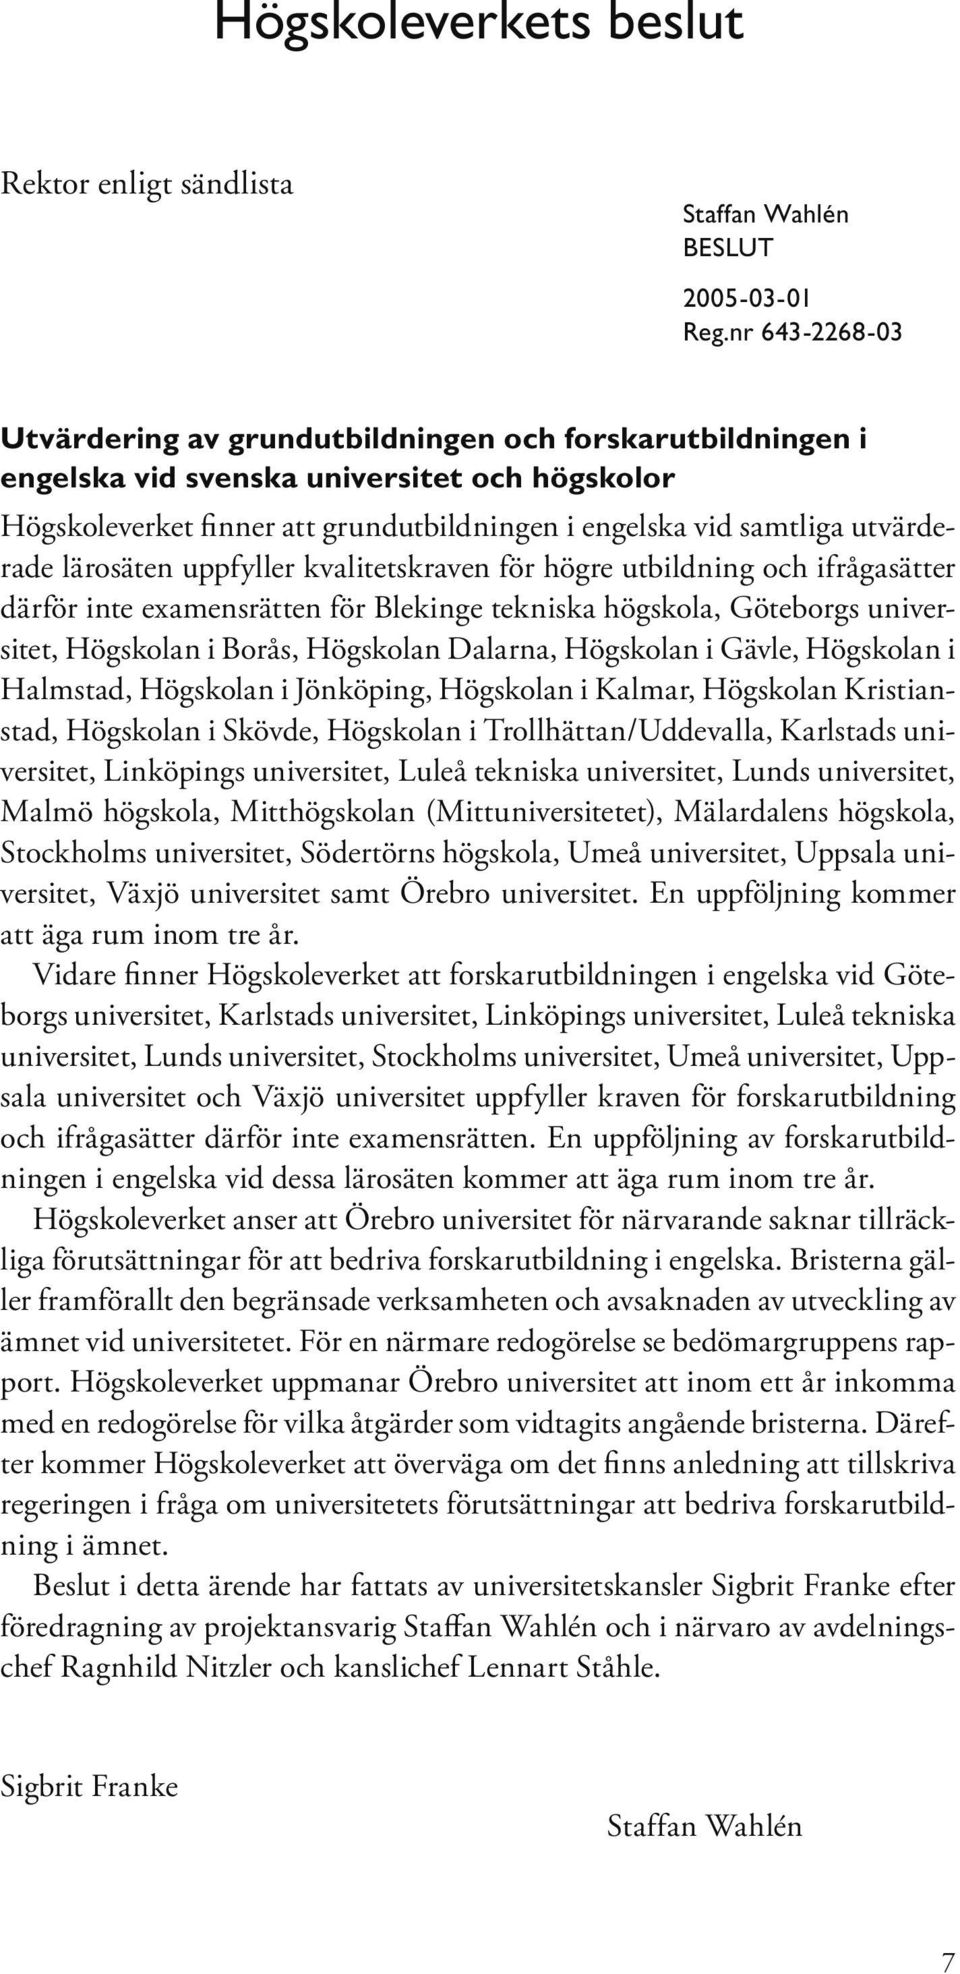 utvärderade lärosäten uppfyller kvalitetskraven för högre utbildning och ifrågasätter därför inte examensrätten för Blekinge tekniska högskola, Göteborgs universitet, Högskolan i Borås, Högskolan